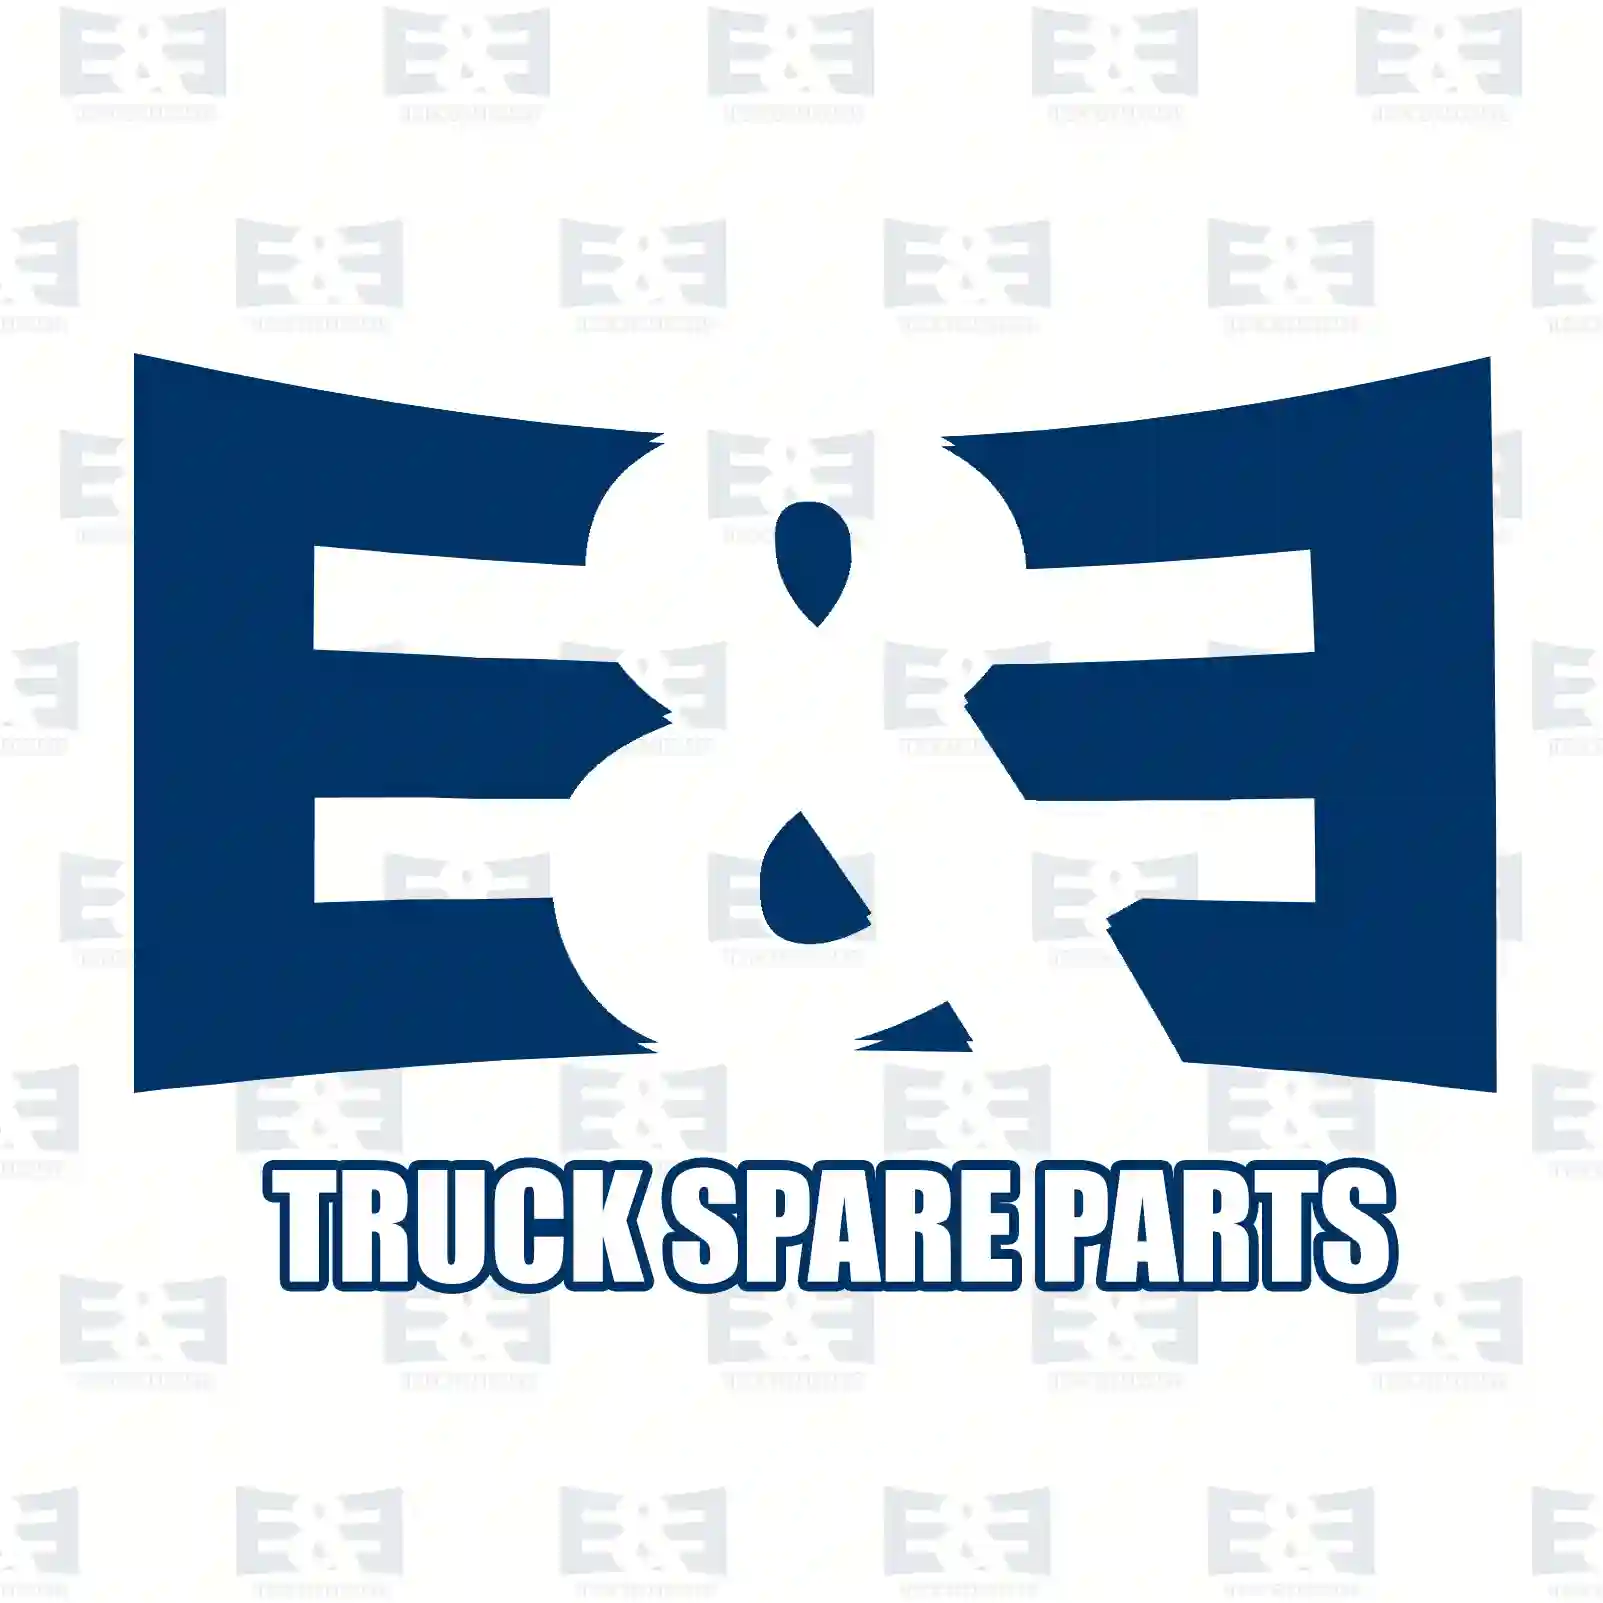 Filter, crankcase ventilation, 2E2204368, 504075145, 5801686484, 504075145, 5801686484, ZG01145-0008 ||  2E2204368 E&E Truck Spare Parts | Truck Spare Parts, Auotomotive Spare Parts Filter, crankcase ventilation, 2E2204368, 504075145, 5801686484, 504075145, 5801686484, ZG01145-0008 ||  2E2204368 E&E Truck Spare Parts | Truck Spare Parts, Auotomotive Spare Parts